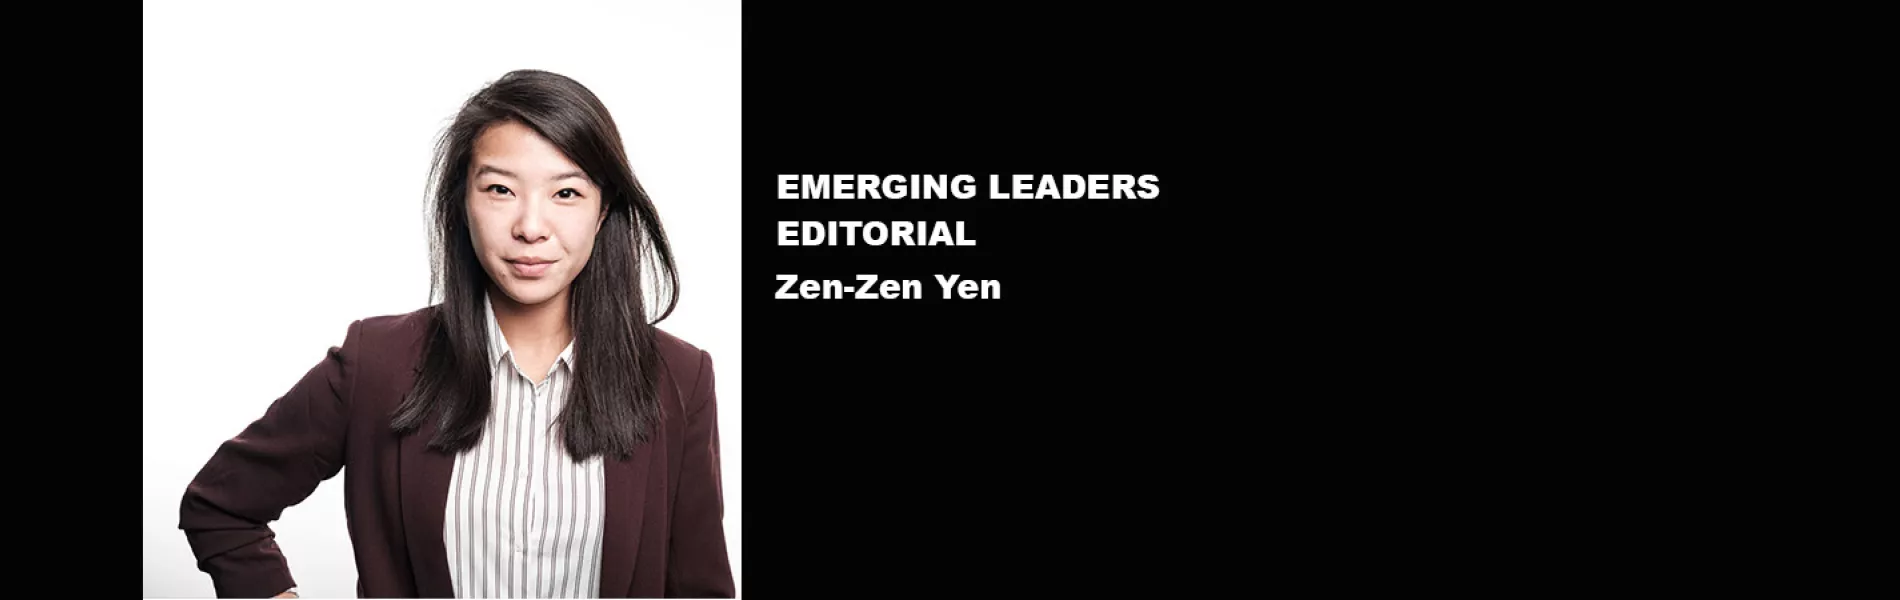 Emerging Leaders Editorial: Emerging Leaders Seek to Inspire, Connect, & Elevate